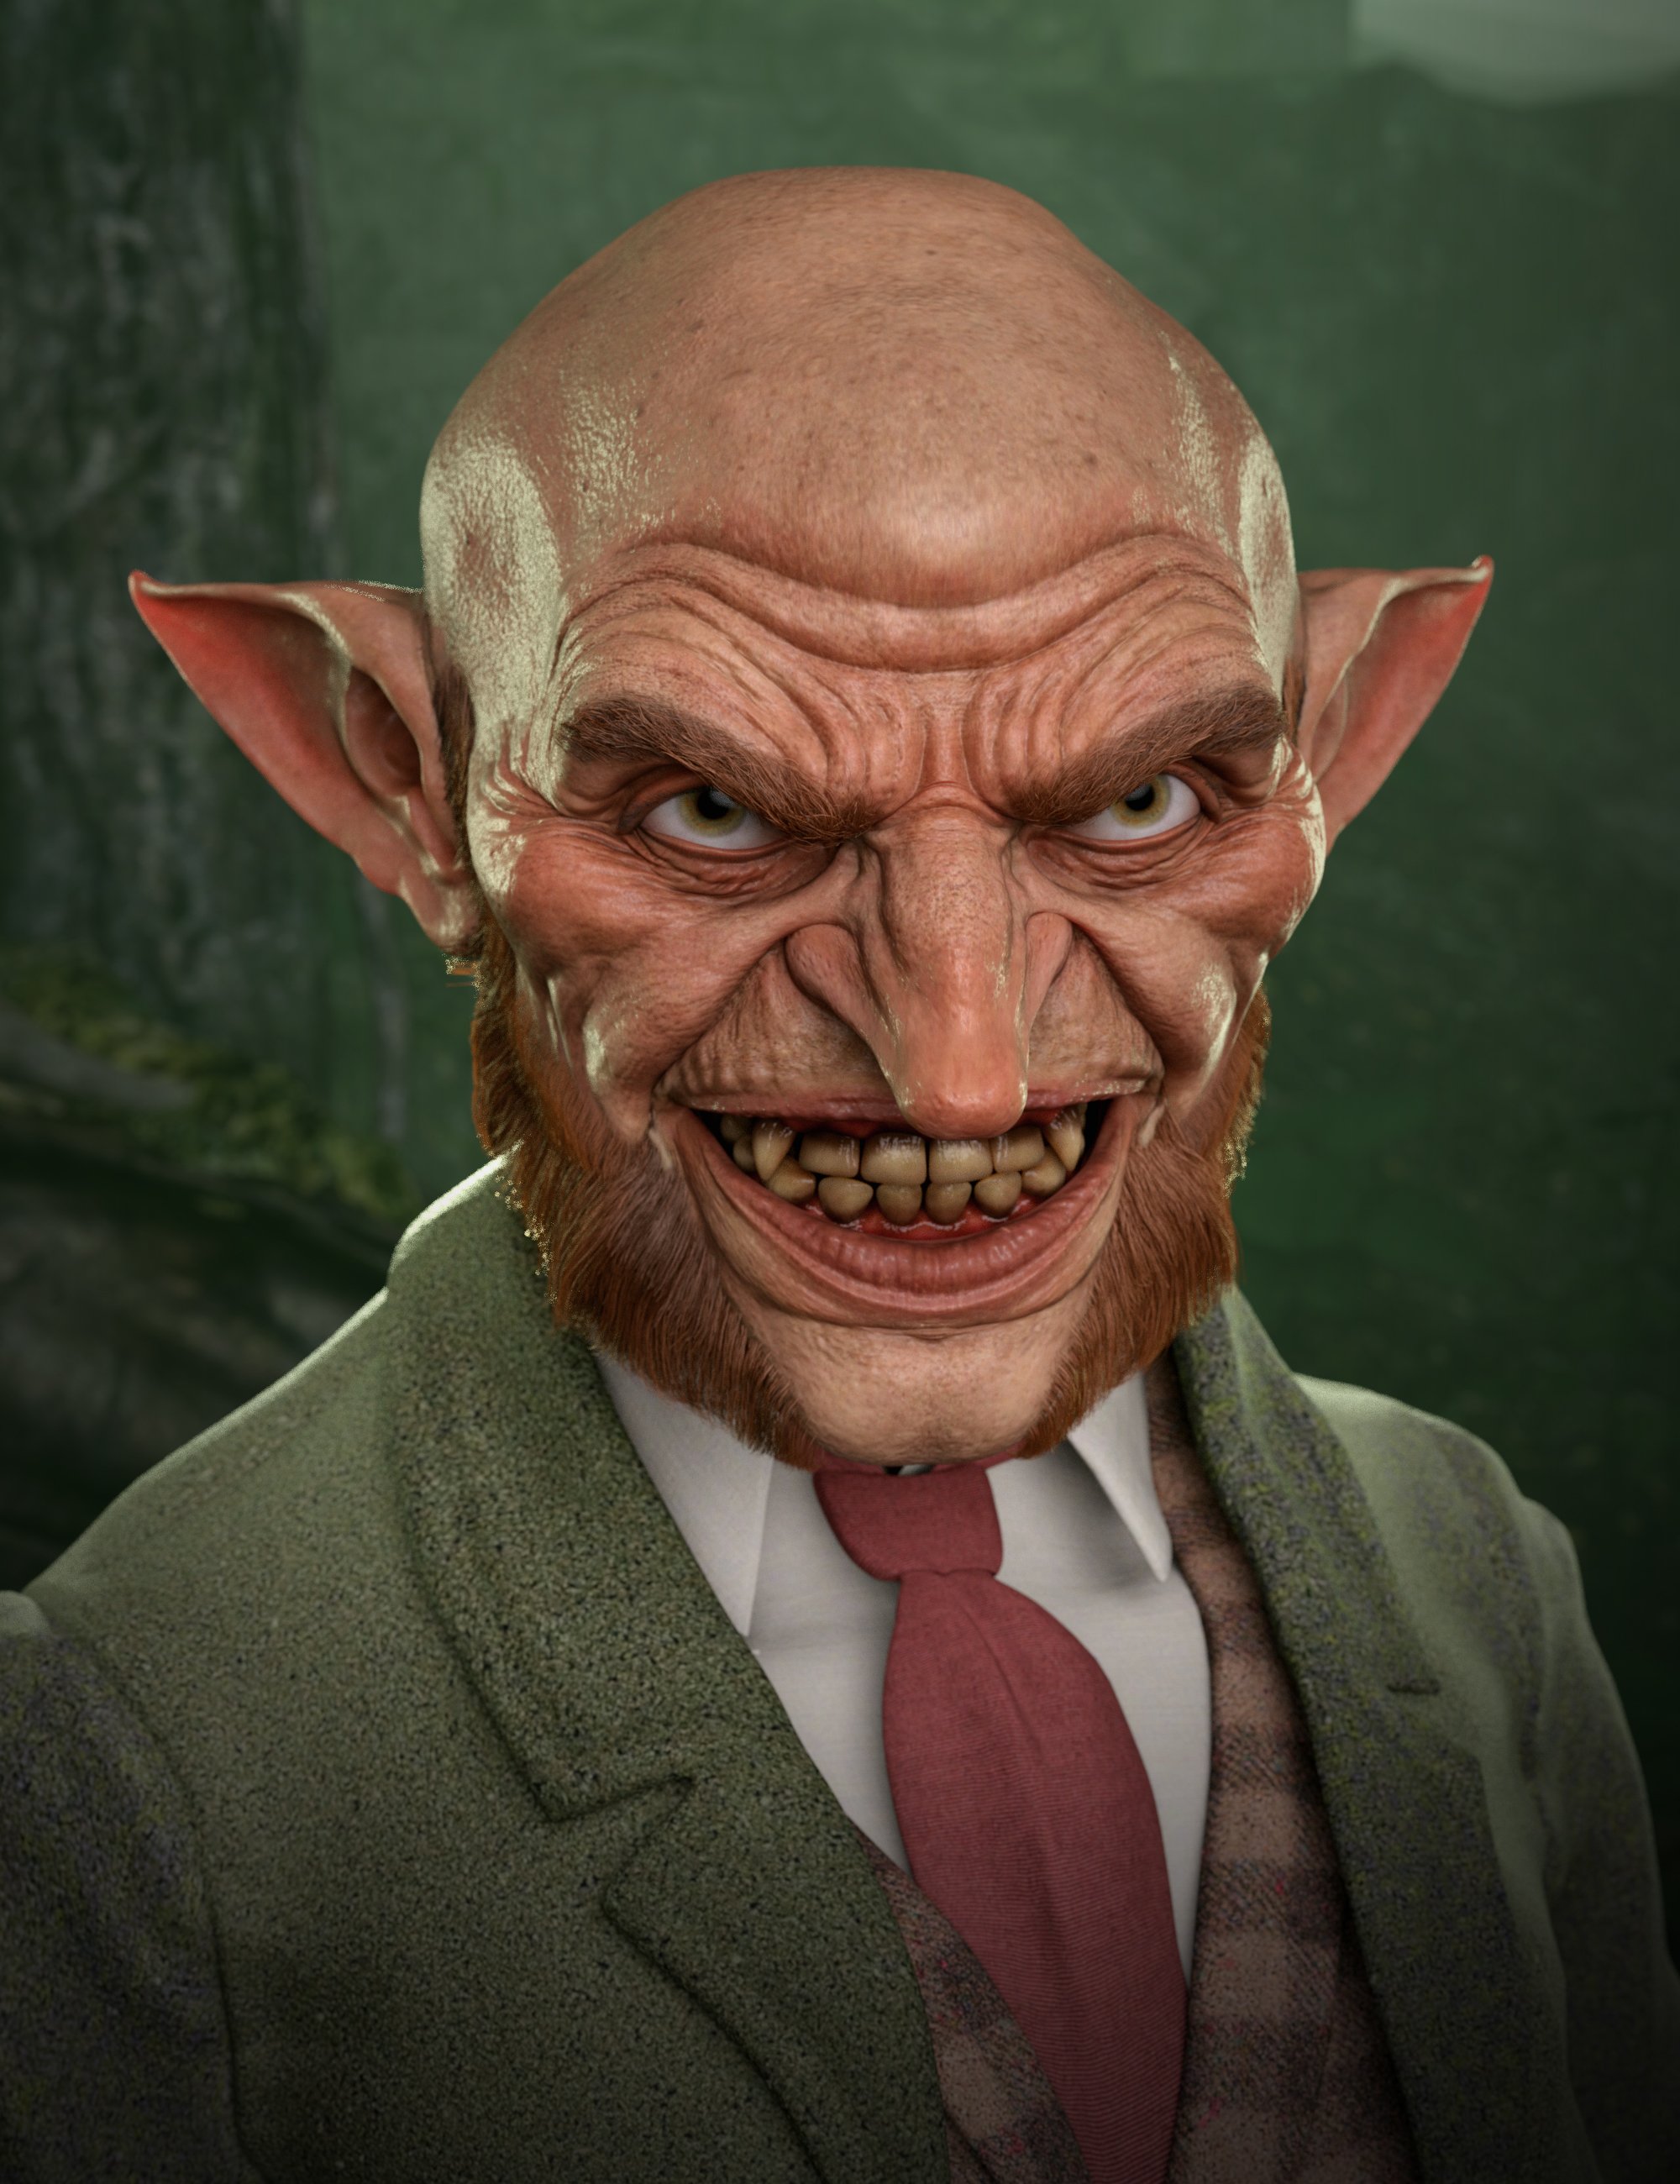 Evil Leprechaun HD for Genesis 8.1 Male by: Josh Crockett, 3D Models by Daz 3D